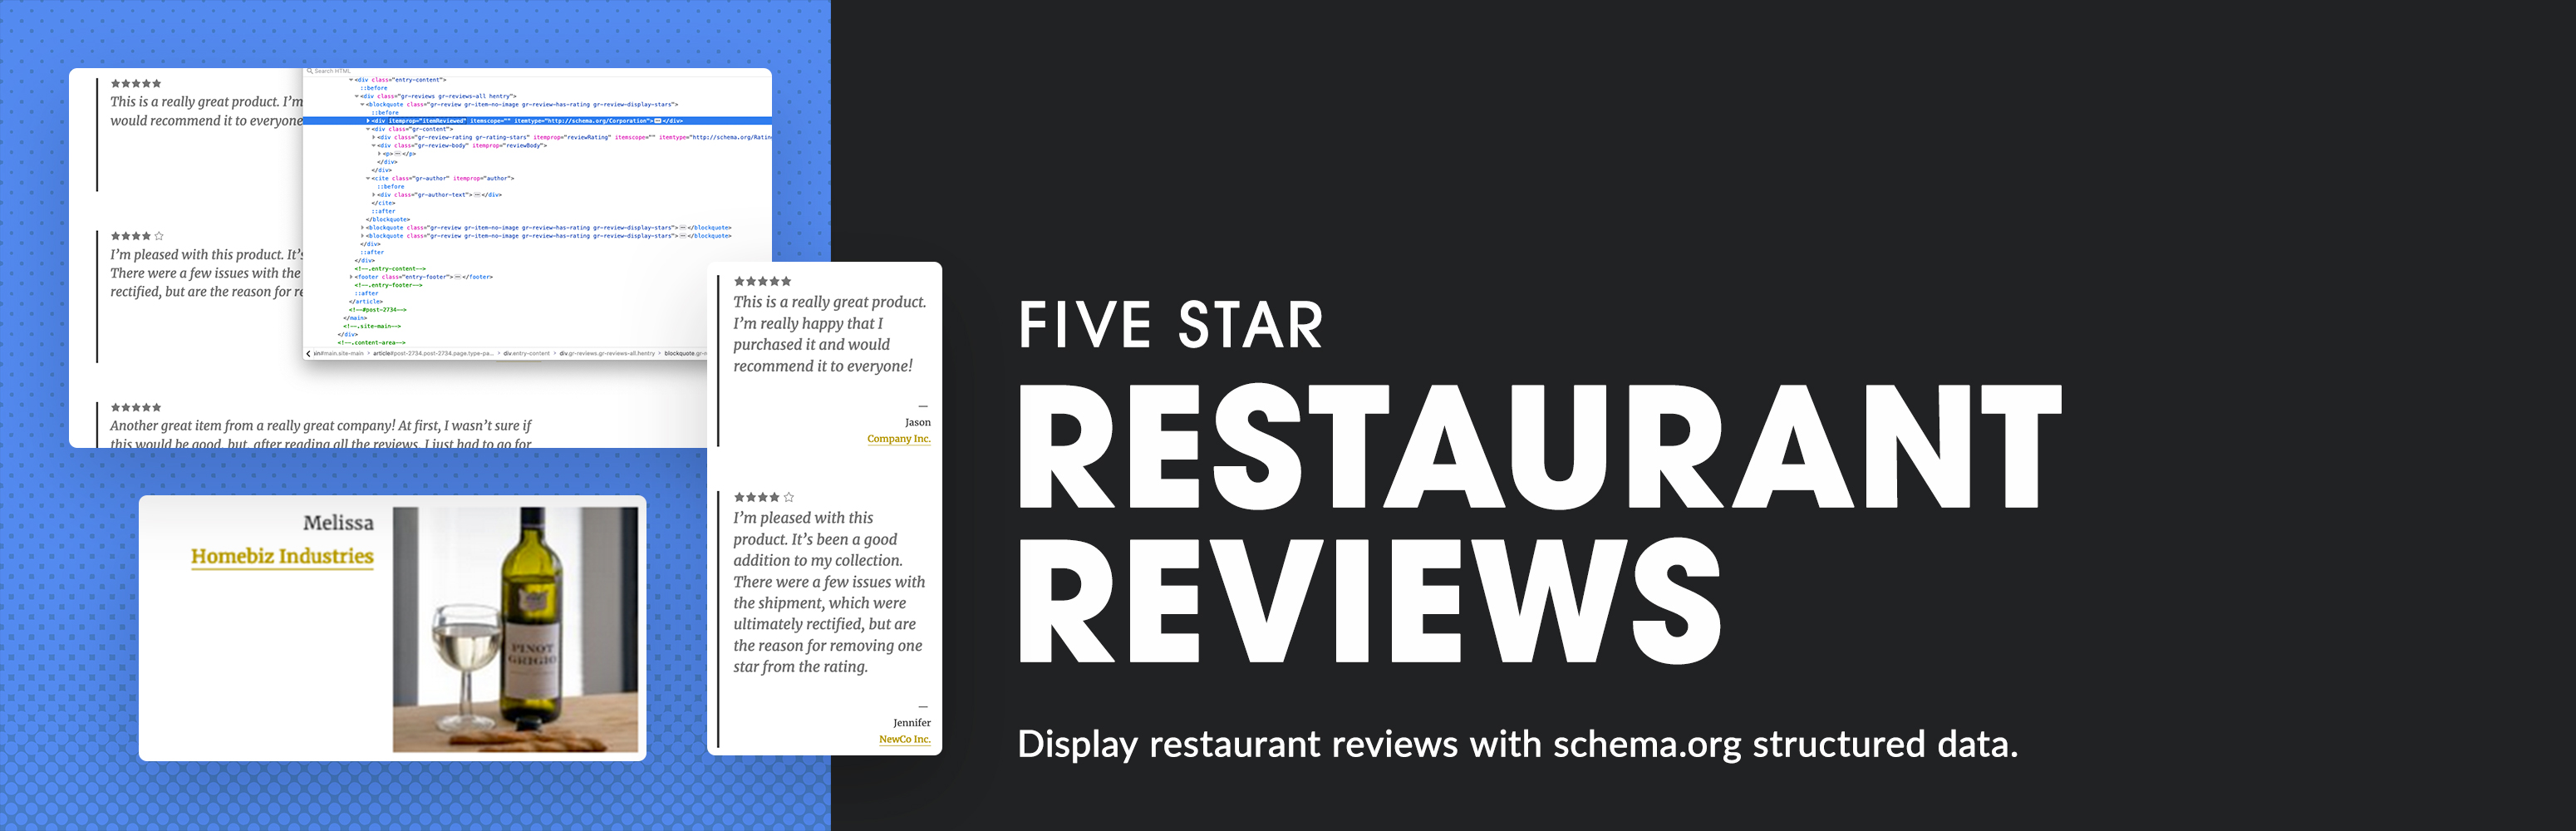 Five Star Restaurant Reviews Preview Wordpress Plugin - Rating, Reviews, Demo & Download